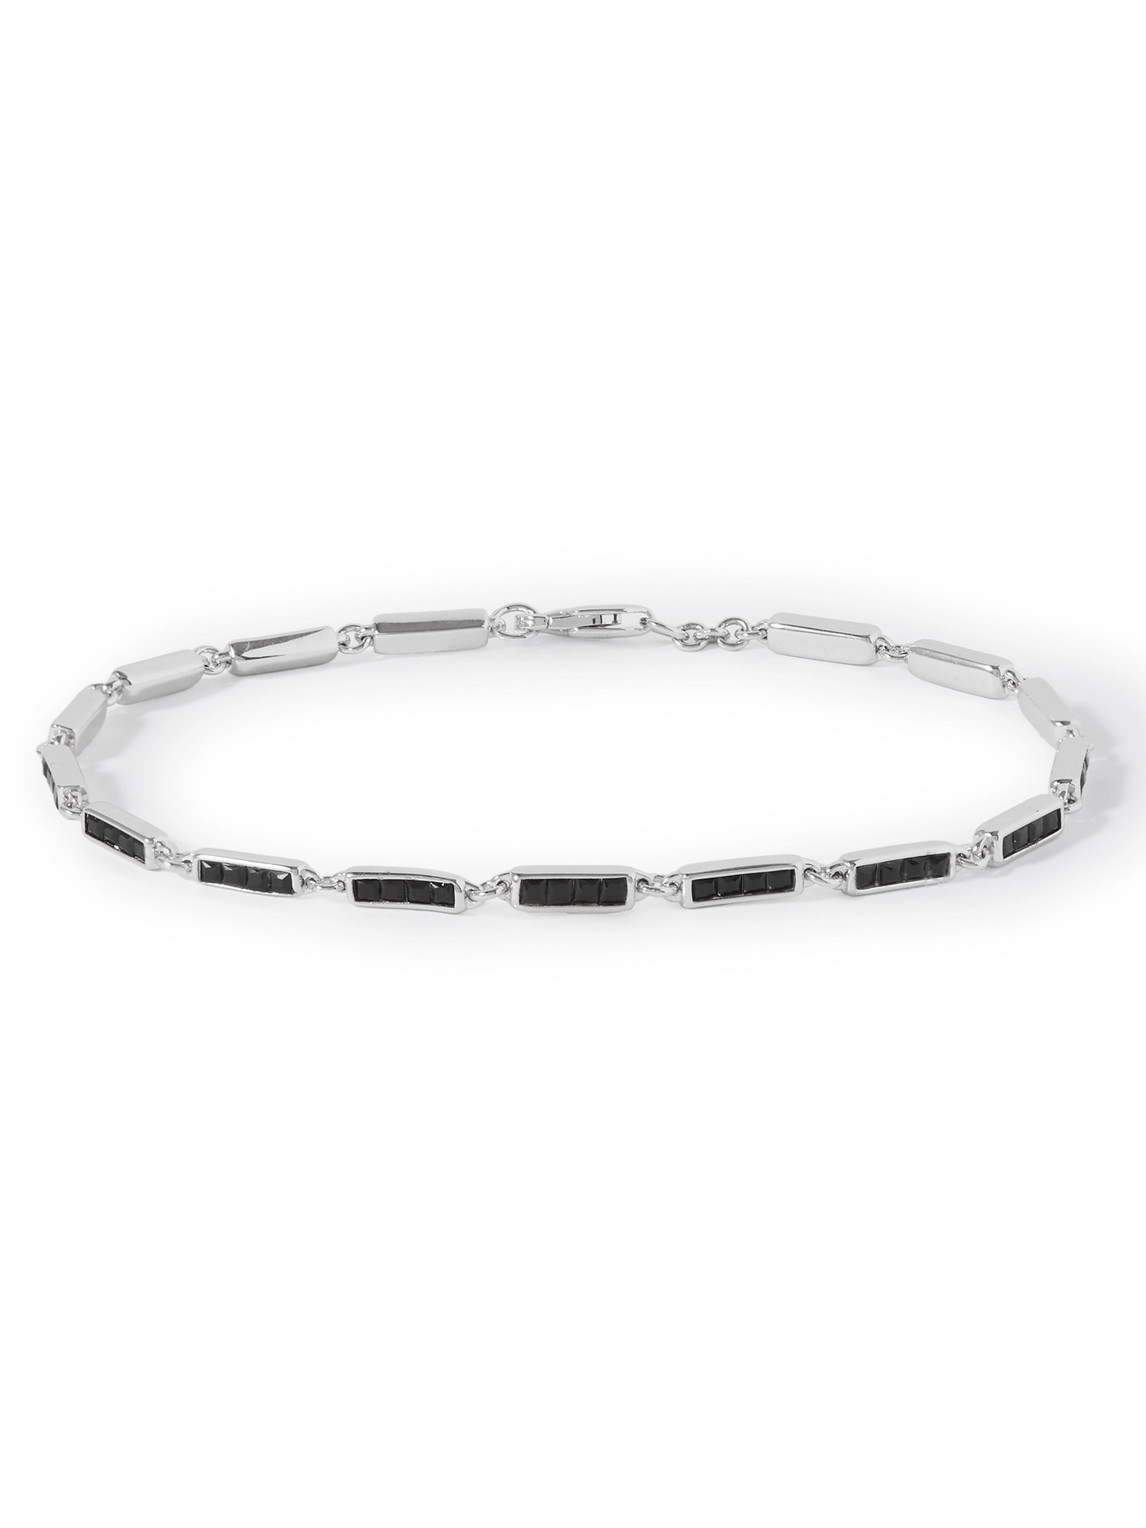 Totem Silver Onyx Bracelet